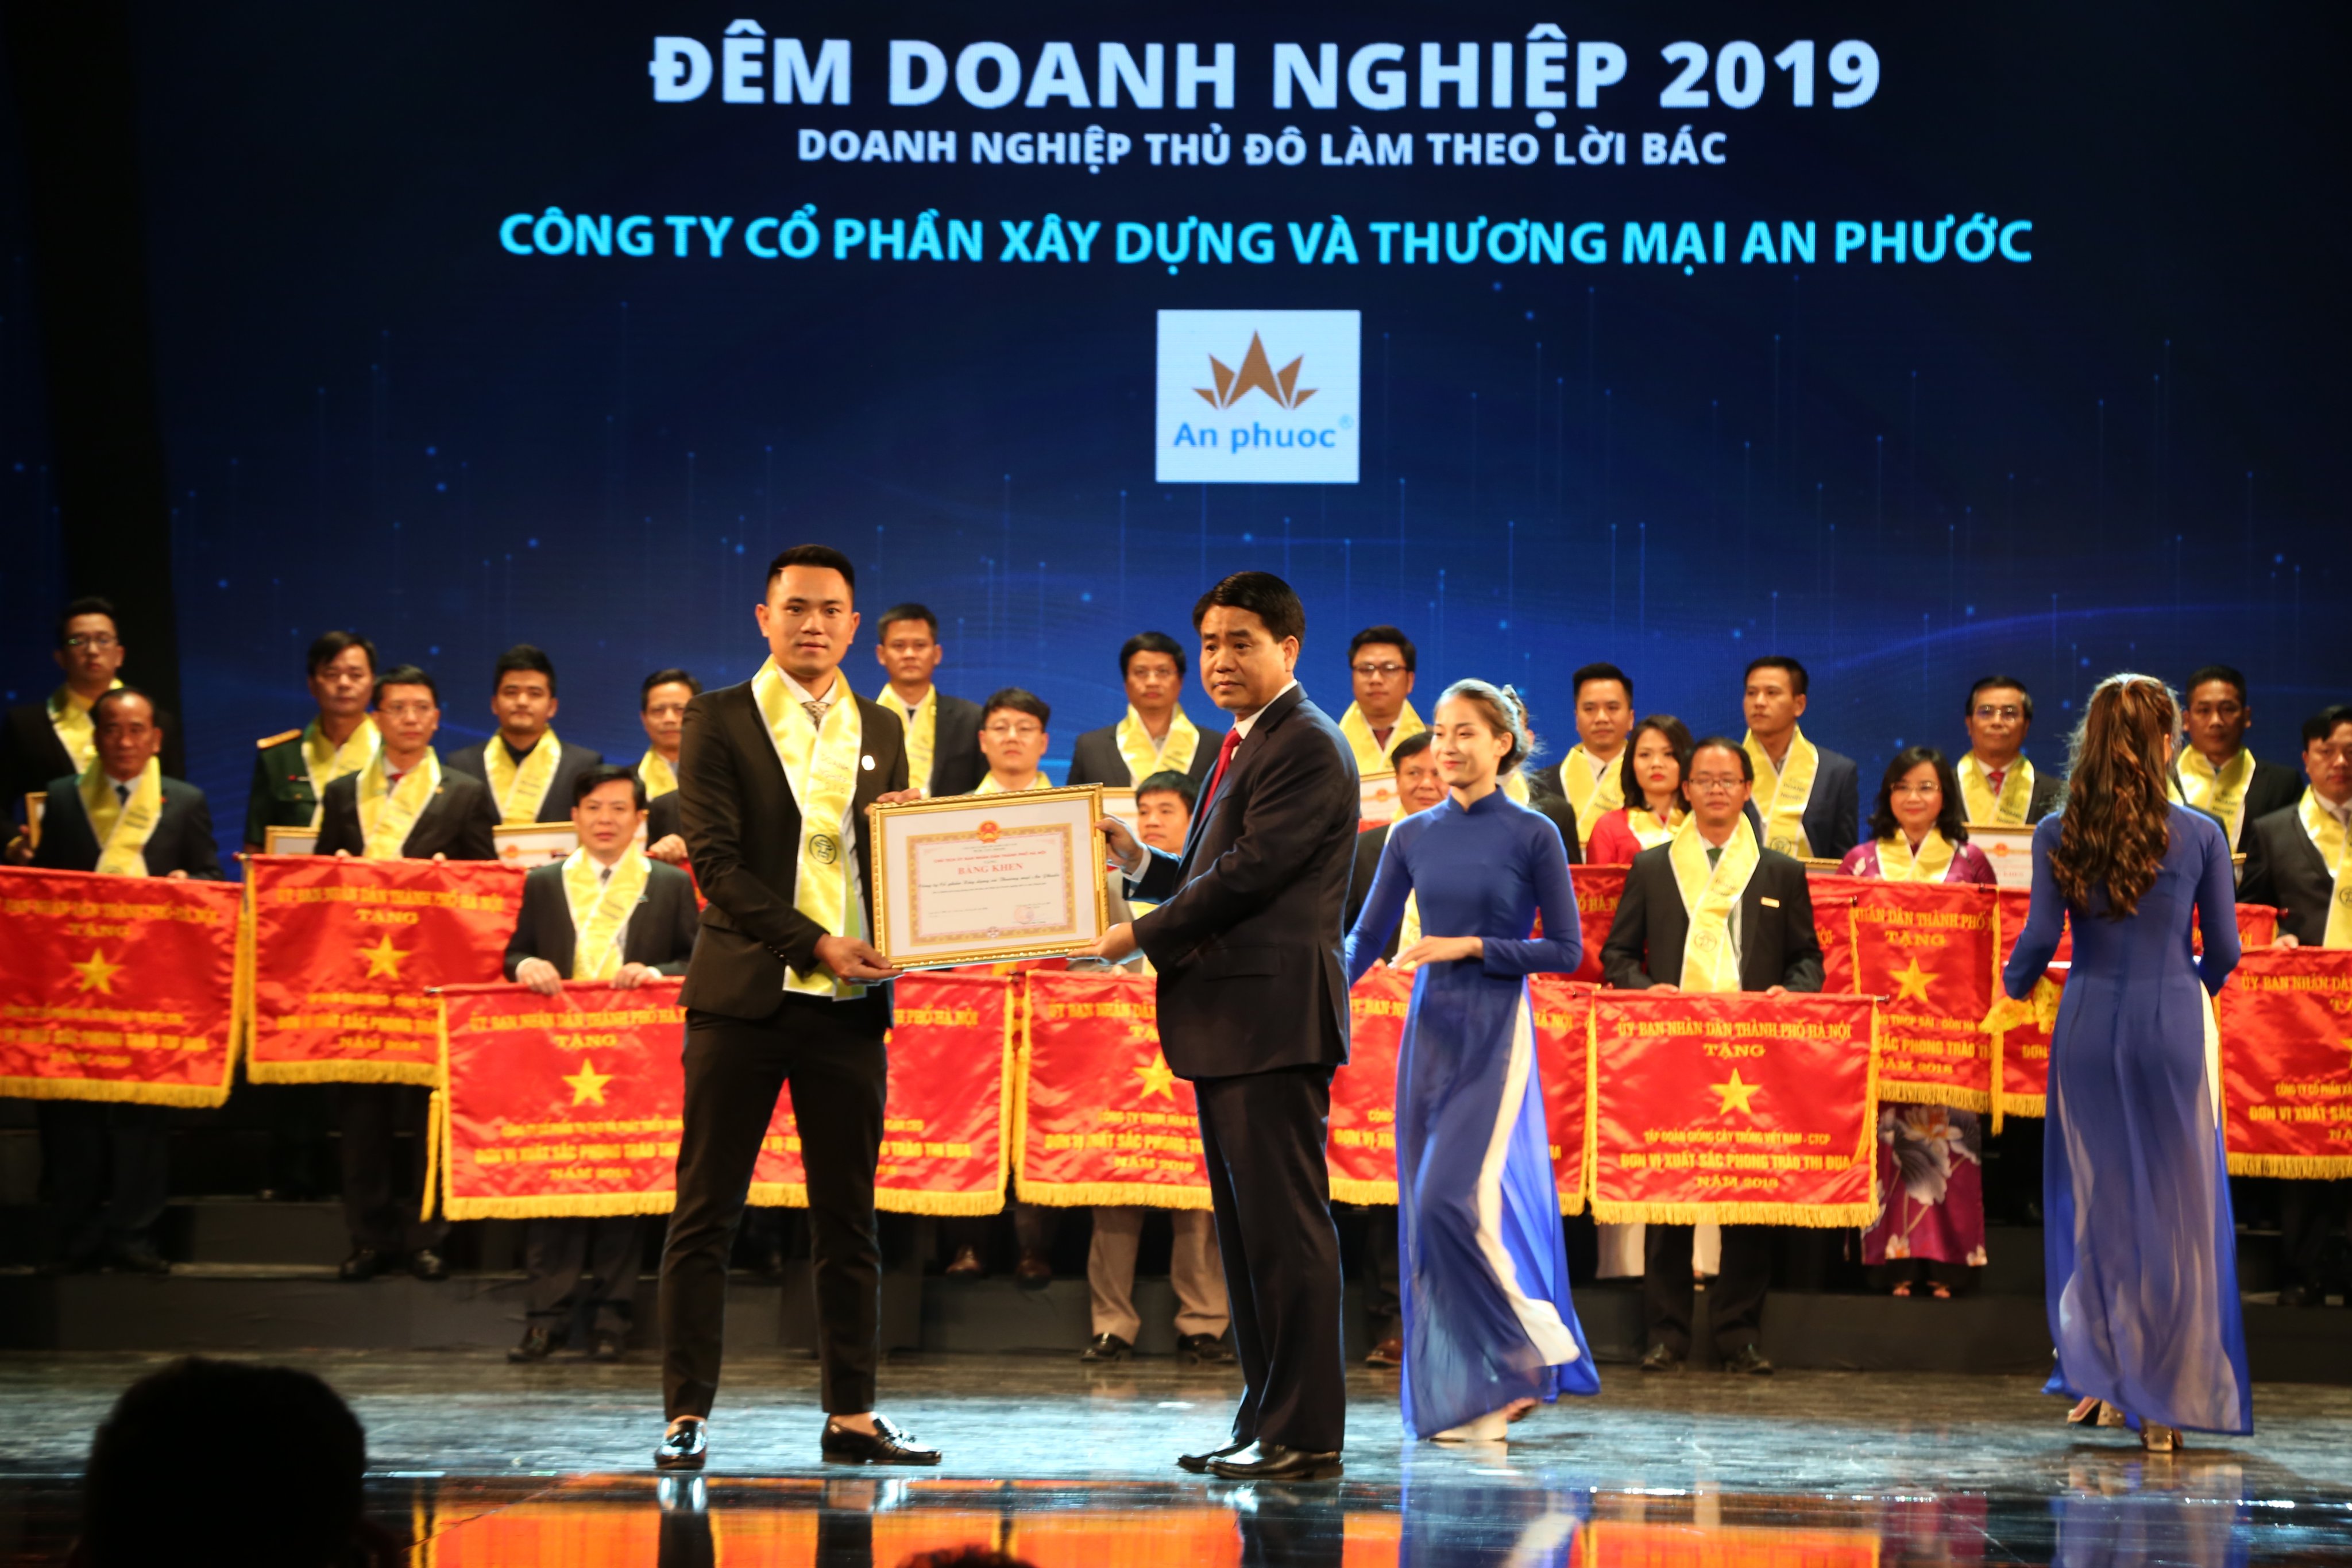 Đèn An Phước vinh dự đón nhận bằng khen cấp Nhà nước tại Đêm Doanh nghiệp 2019